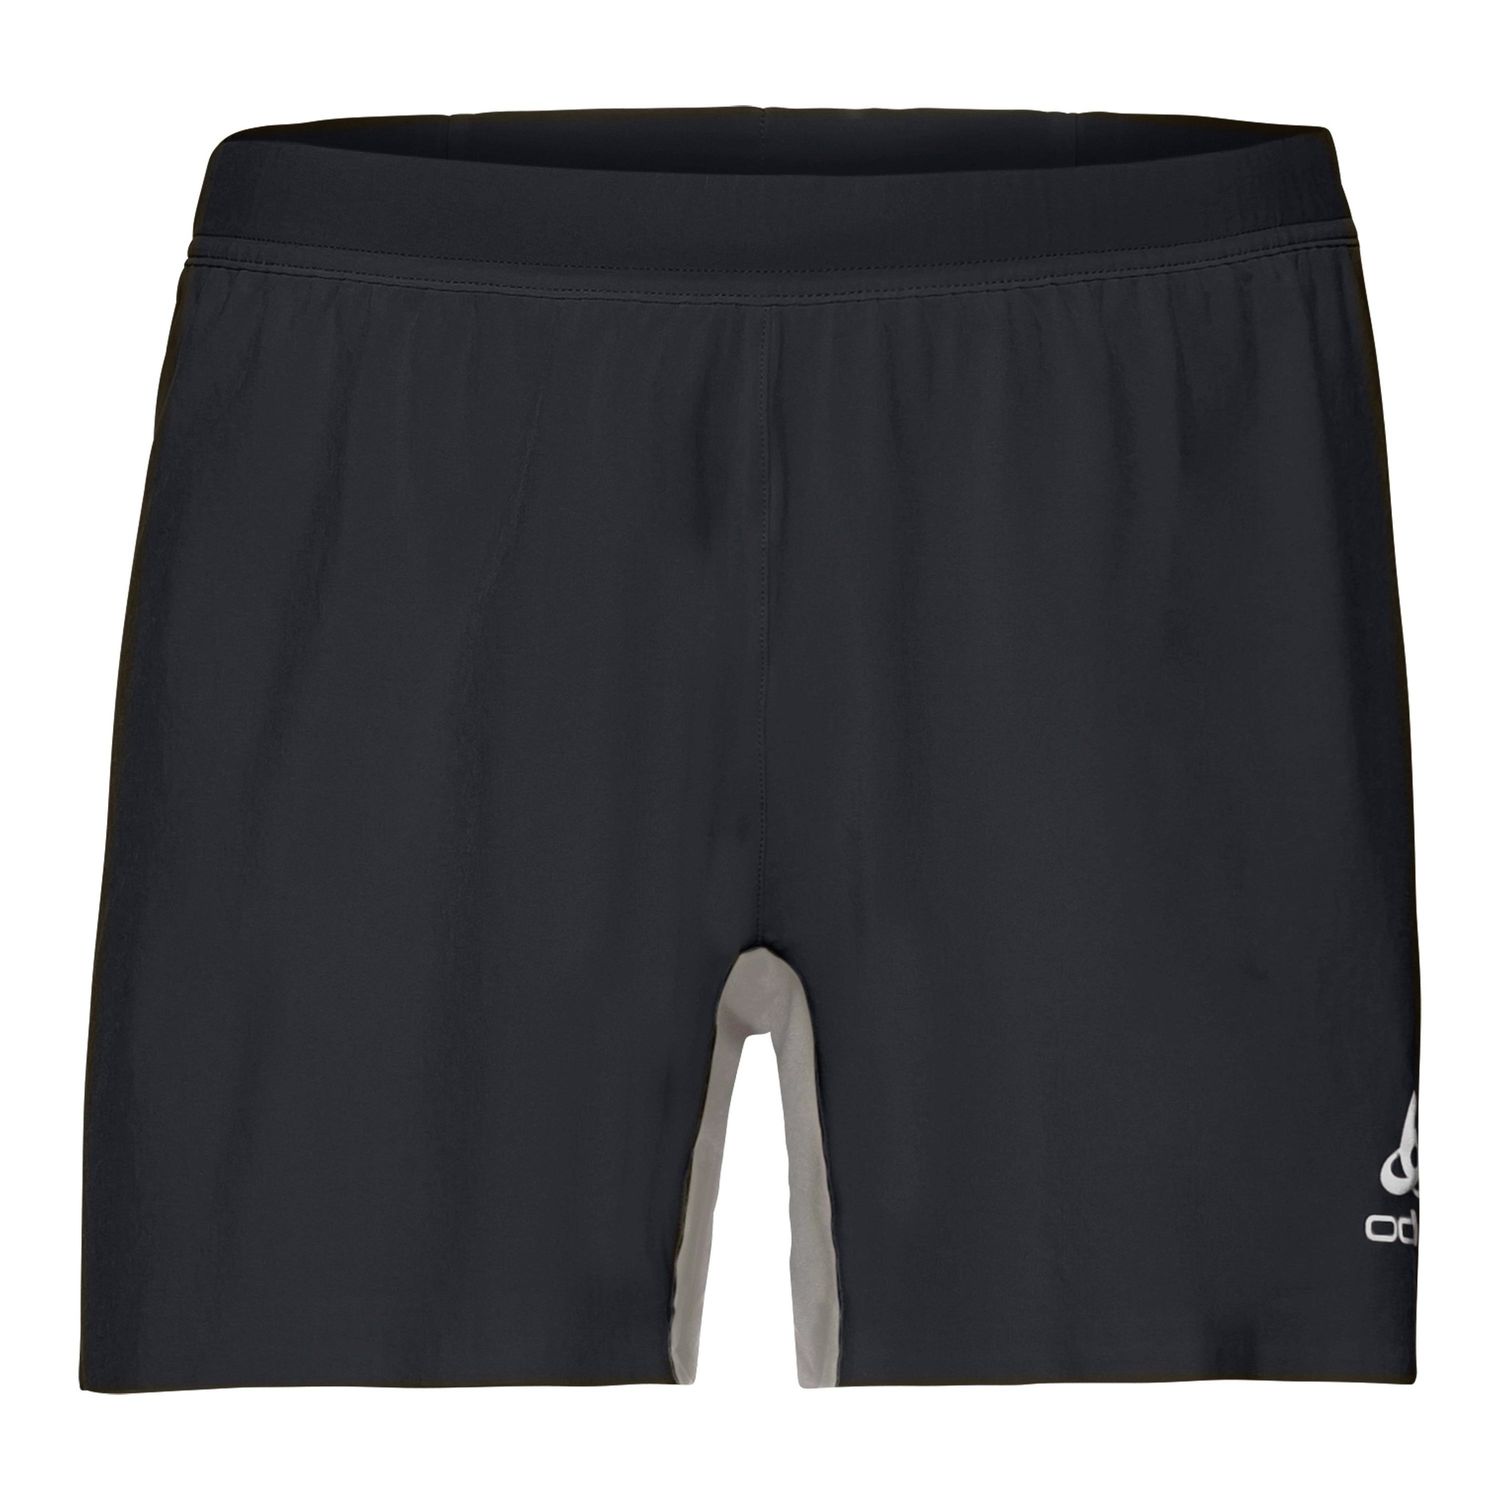 Odlo - Shorts Zeroweight X- Pantalón corto - Hombre